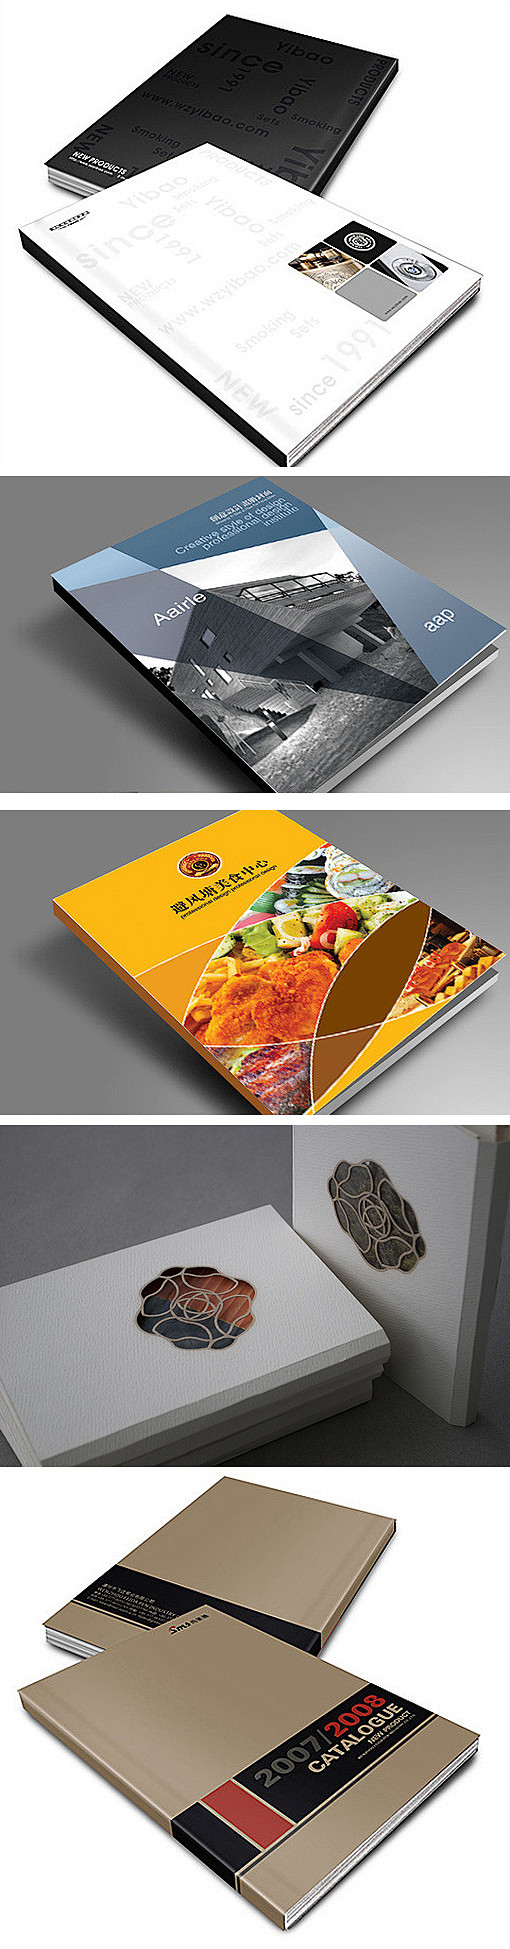 中国画册设计网 食品画册封面设计 洛阳科...